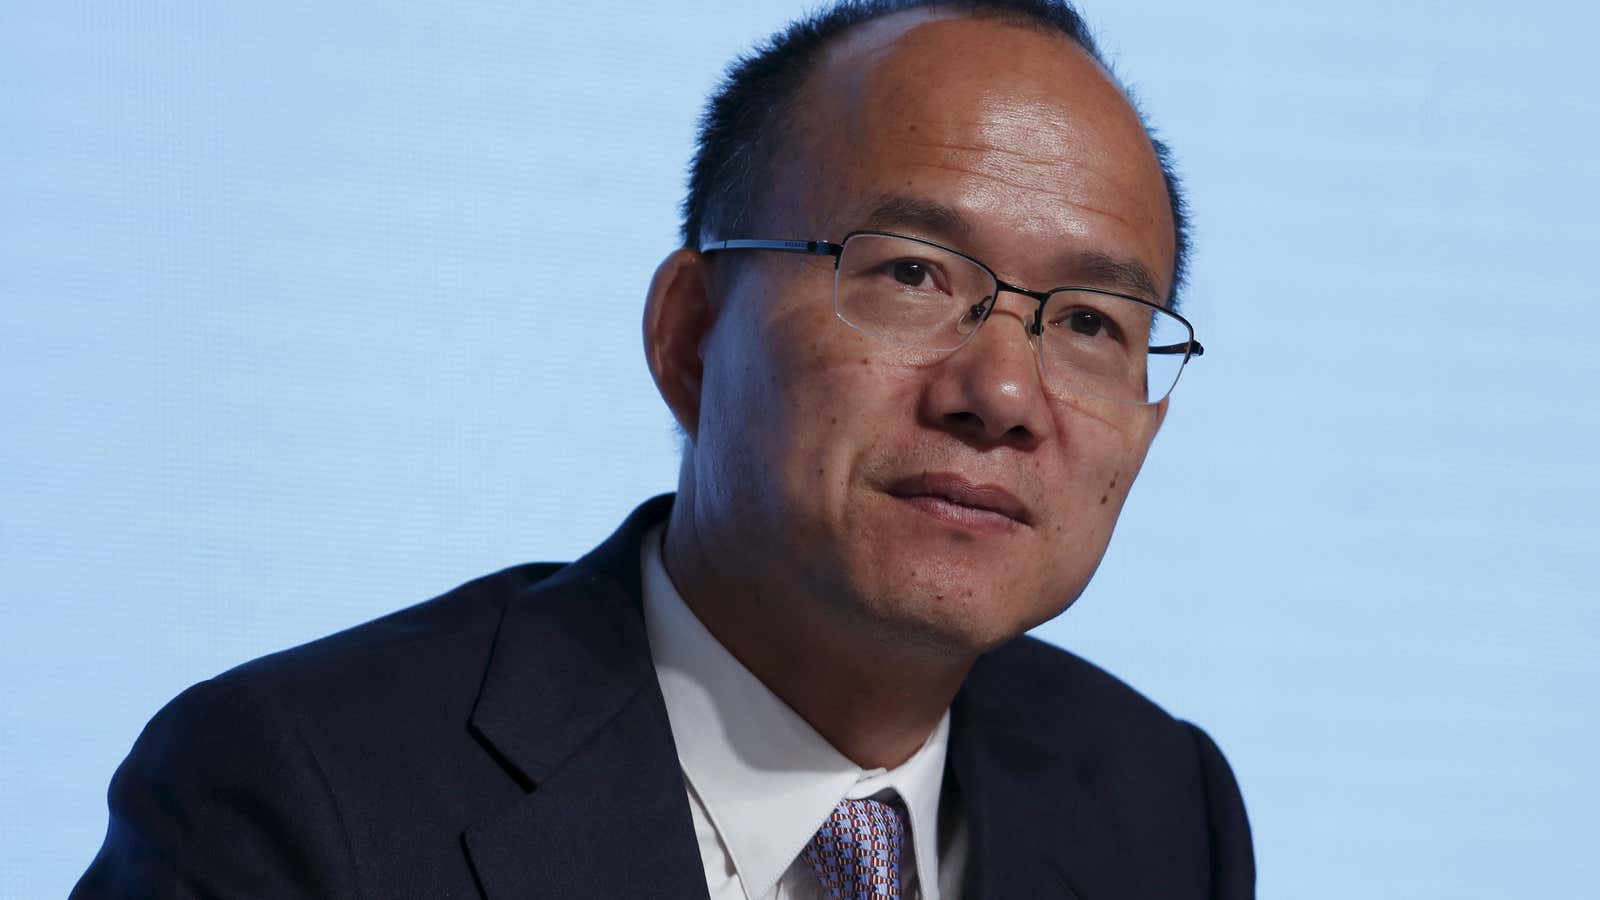 Guo Guangchang, Chairman of Fosun Group.